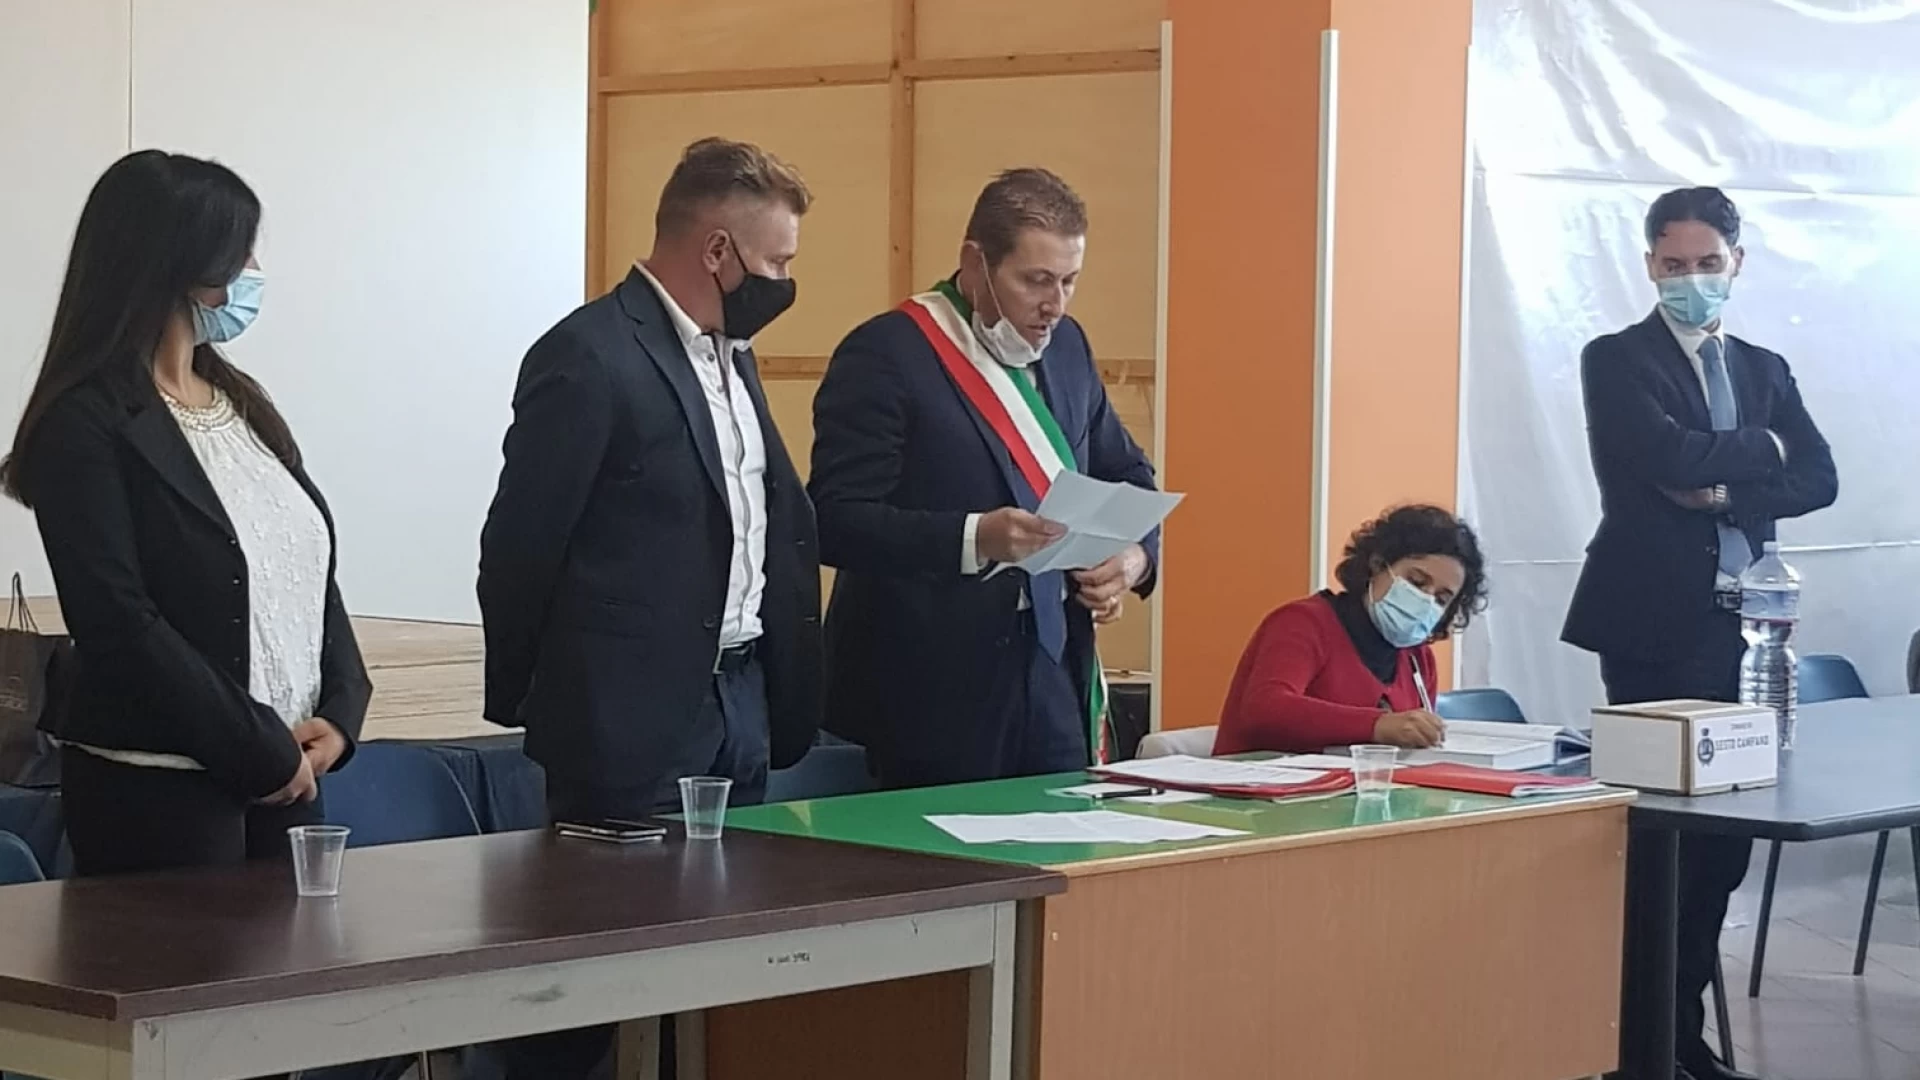 Sesto Campano: parte il quinquennio amministrativo del sindaco Eustachio Macari. Stamani l’insediamento ufficiale.